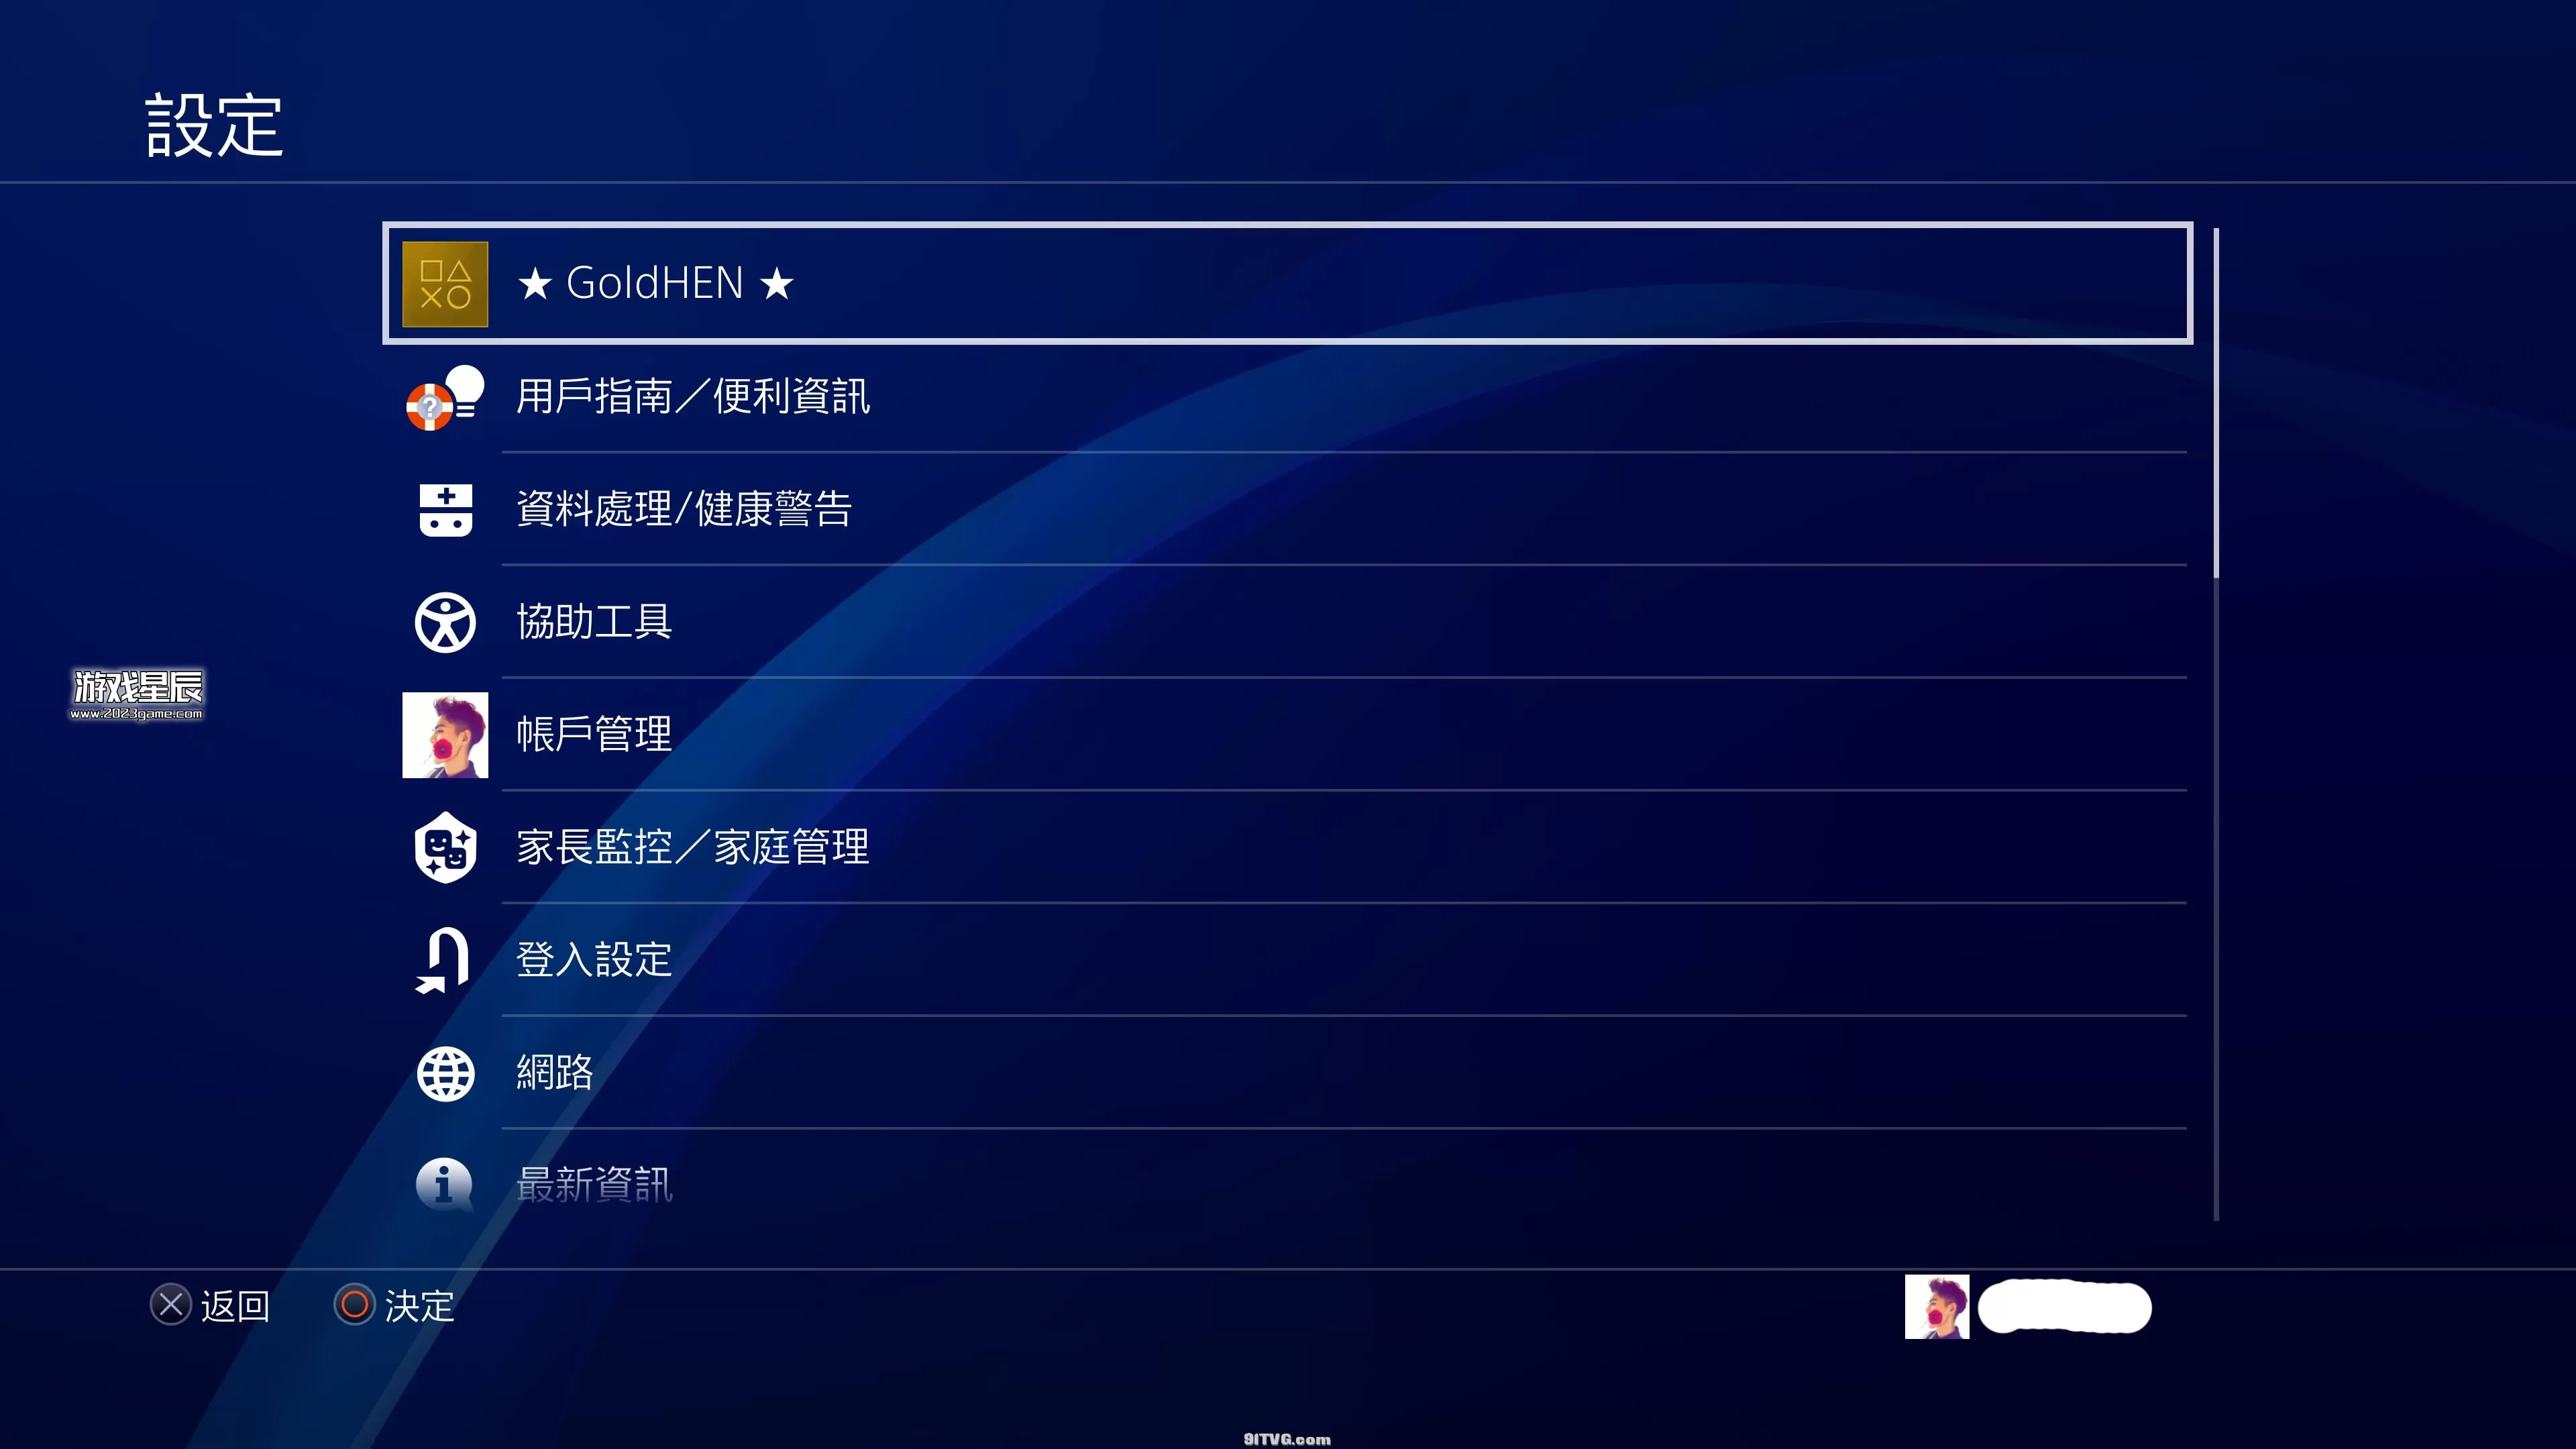 【萌新必看】PS4 9.0离线升级教程+安装游戏教程+9.0破解教程_10